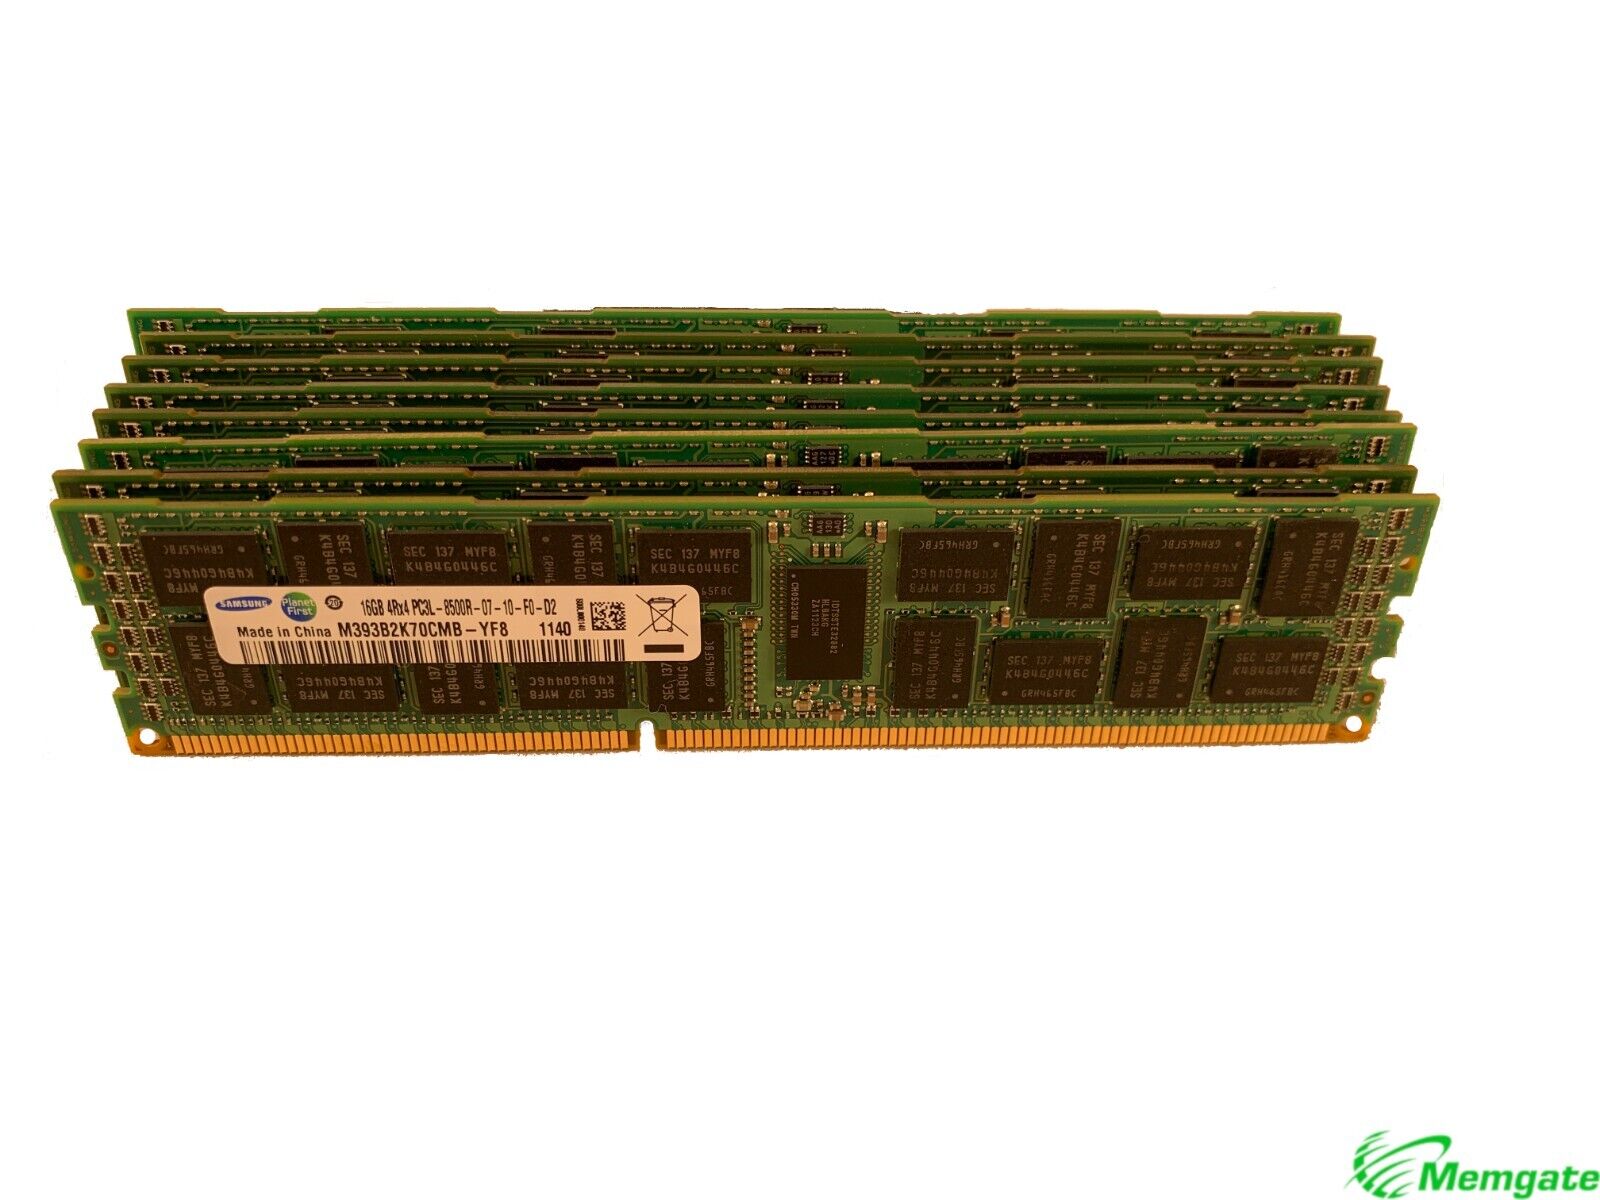 64GB (4x16GB) DDR3 PC3-8500R ECC Reg Memory for Dell Precision WS T3600 & T7600